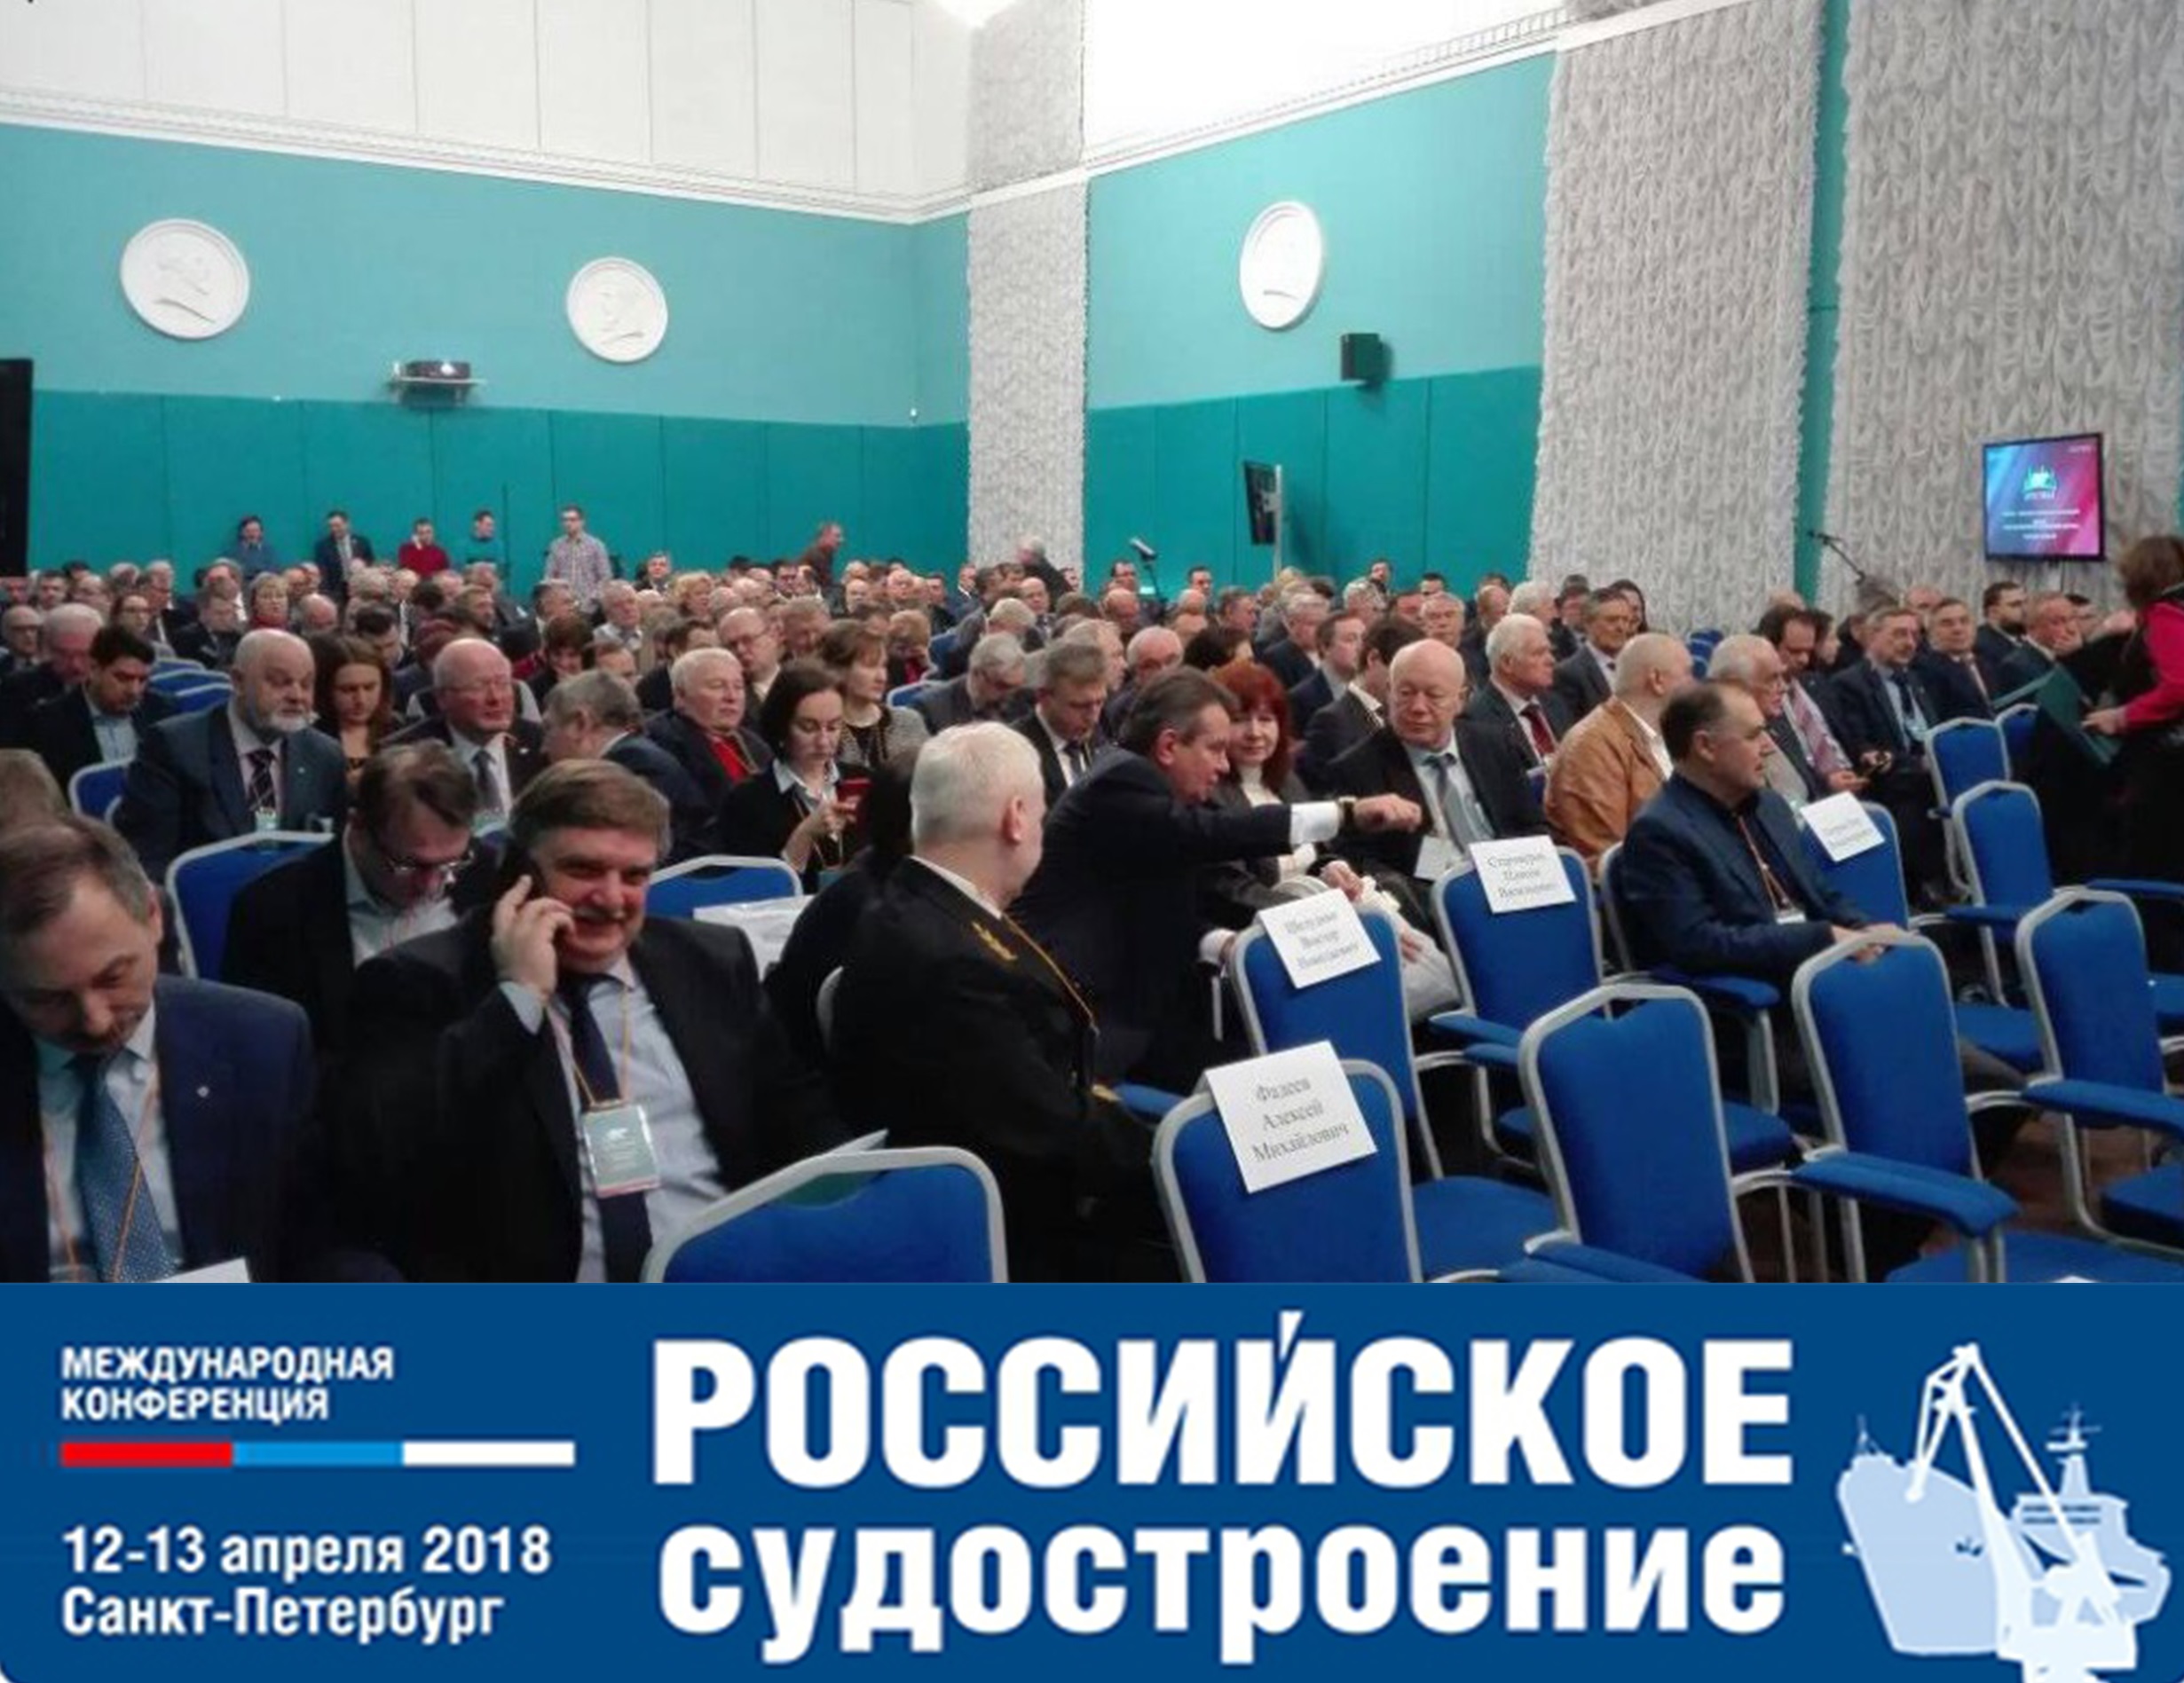 Участие в международной конференции «Российское судостроение»